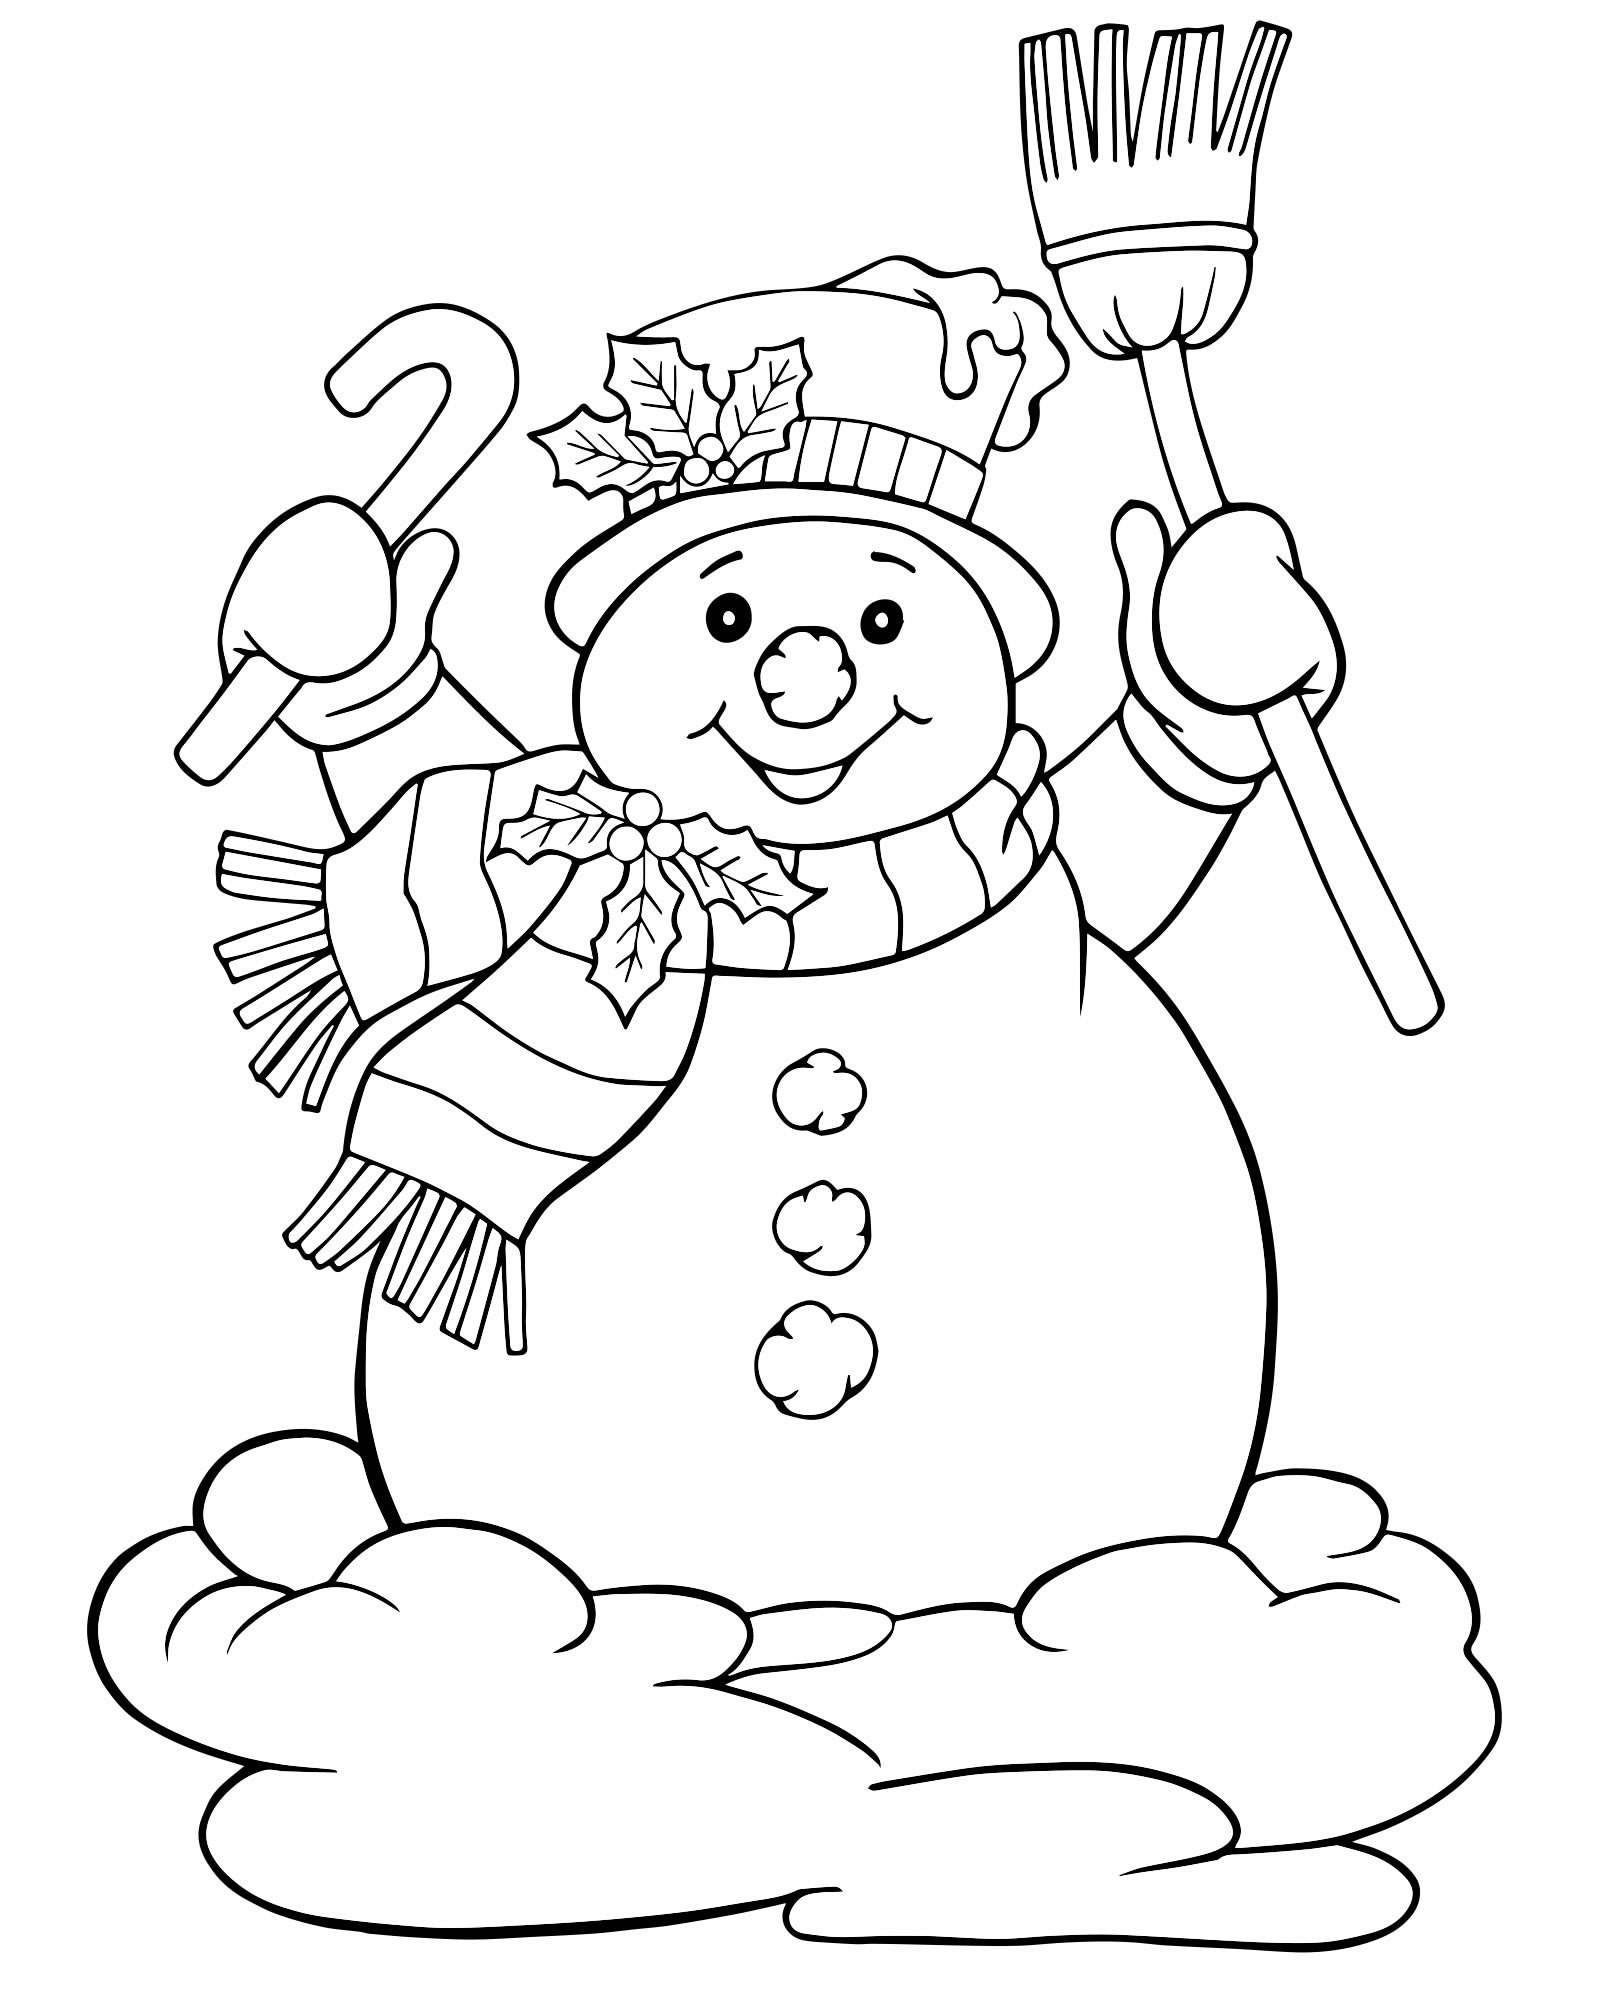 Раскраска снеговик С. Снеговик с ведром на голове